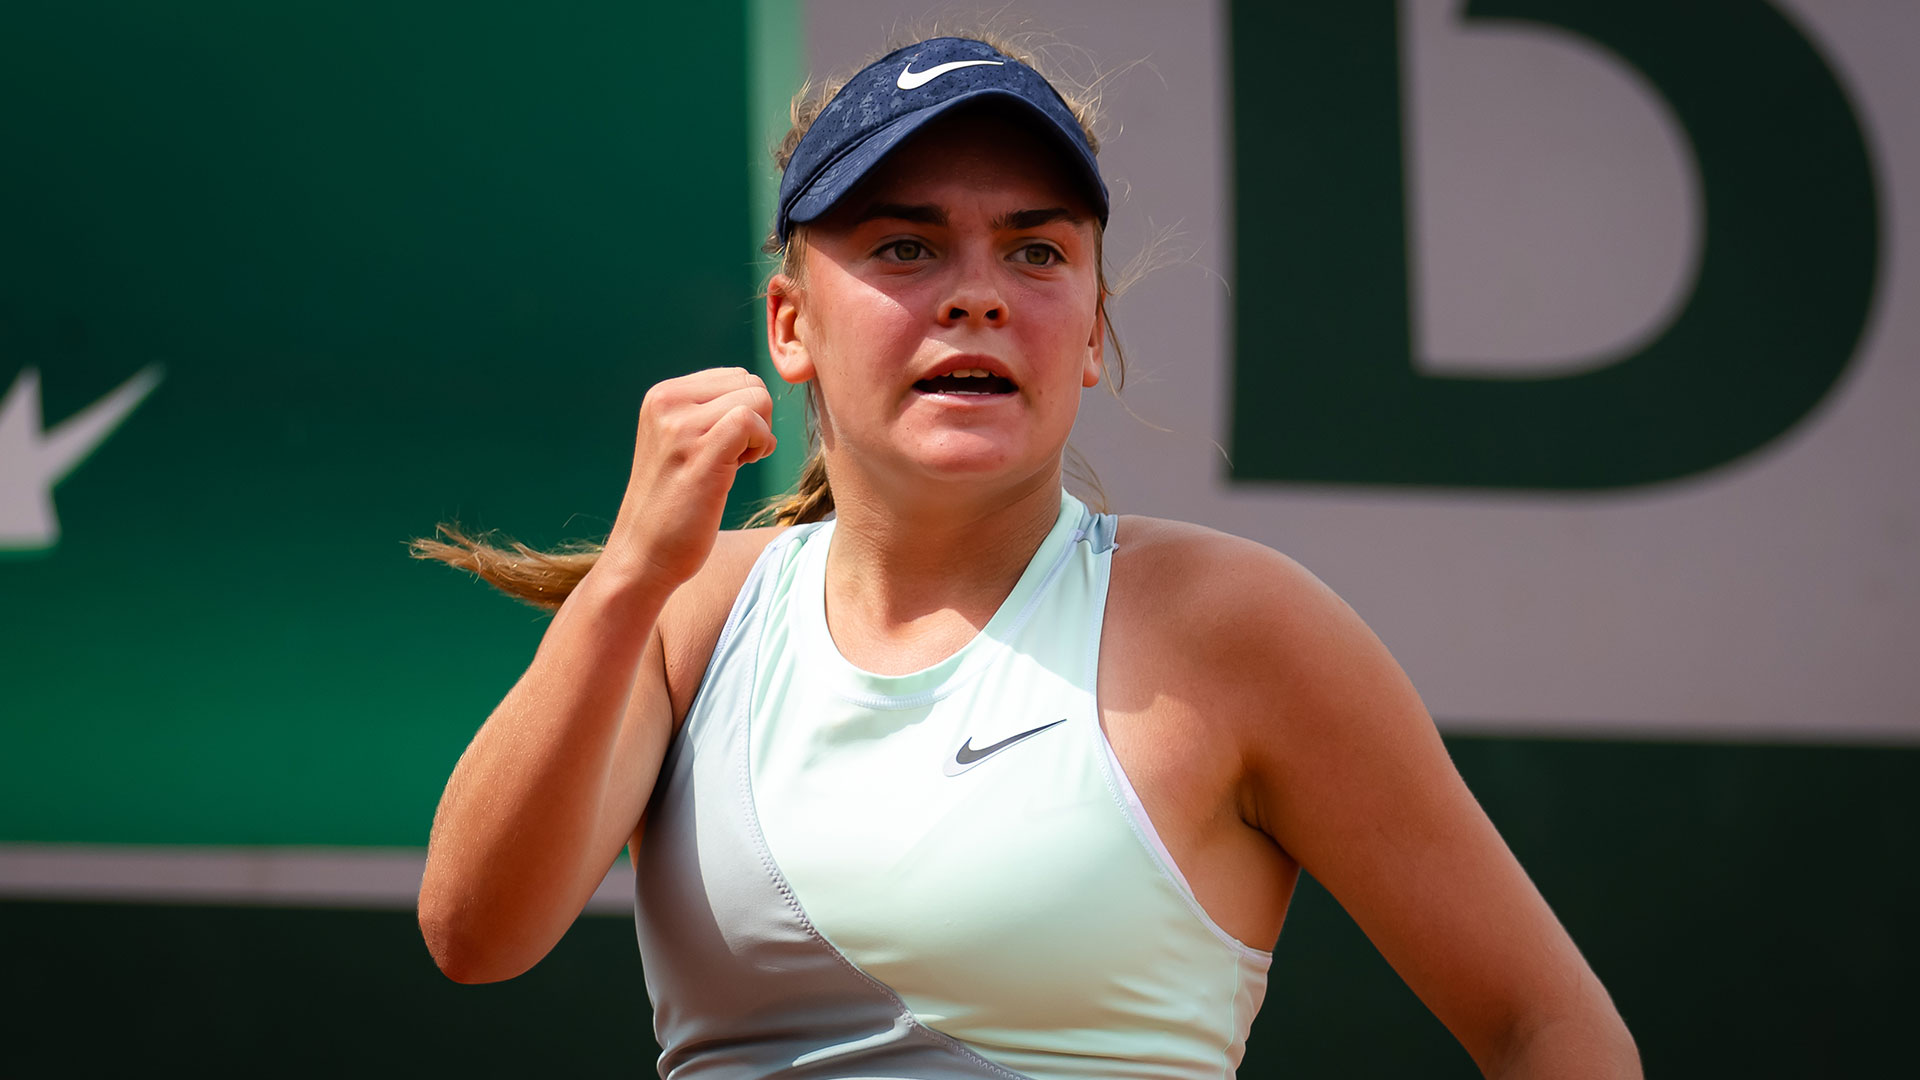 Sara Bejlek, tenista de 16 años, tuvo su estreno en un Gran Slam al jugar la primera ronda del US Open (Foto: Getty Images)